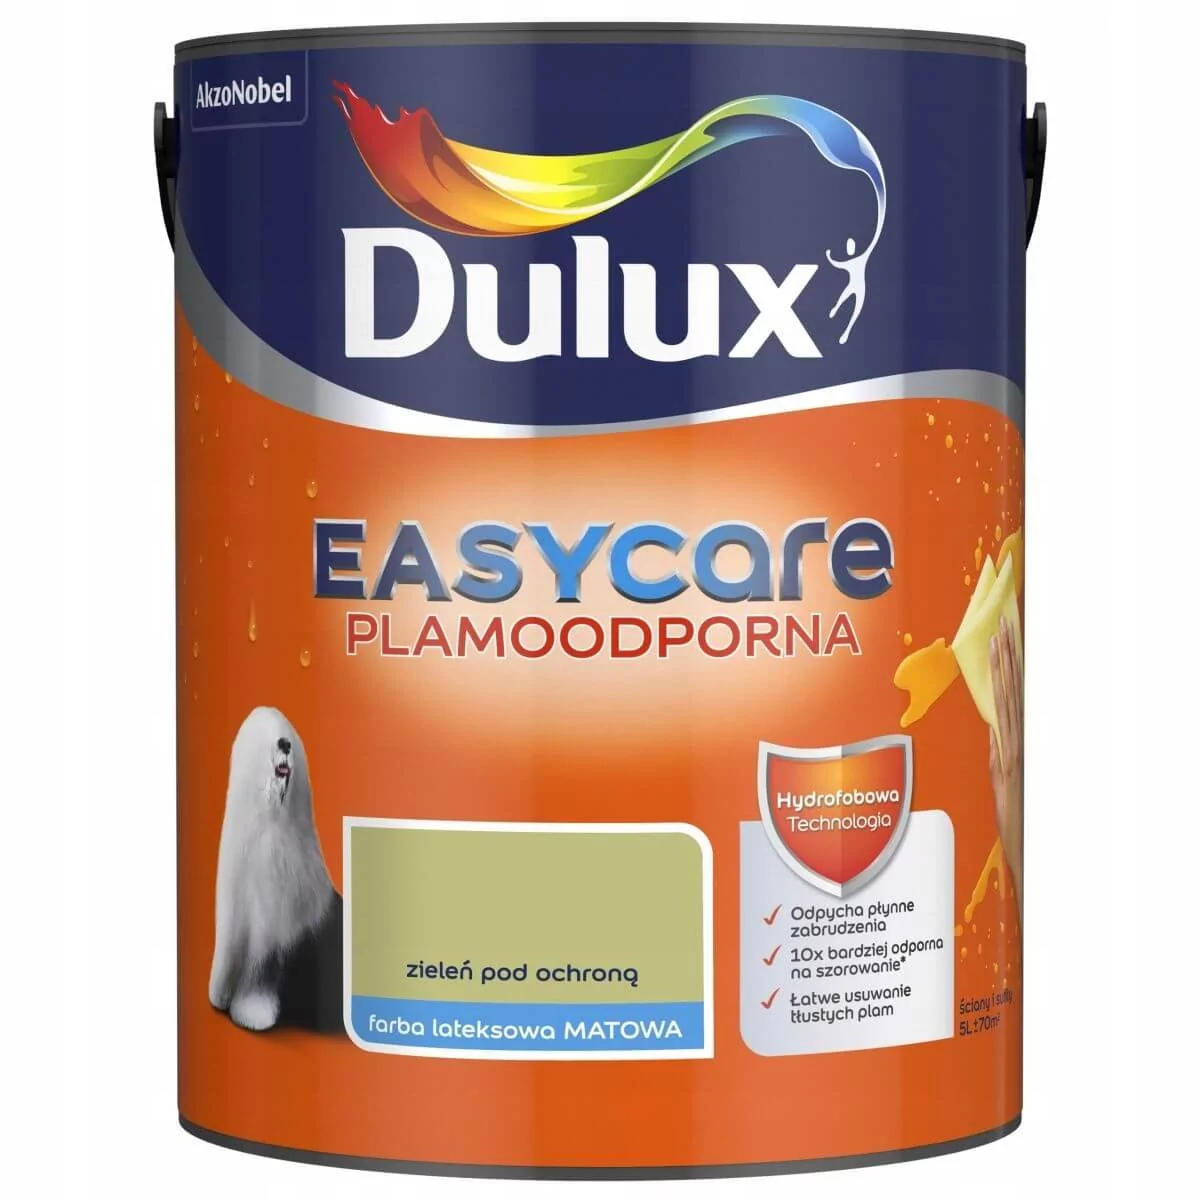 Dulux Easycare zieleń pod ochroną 5L